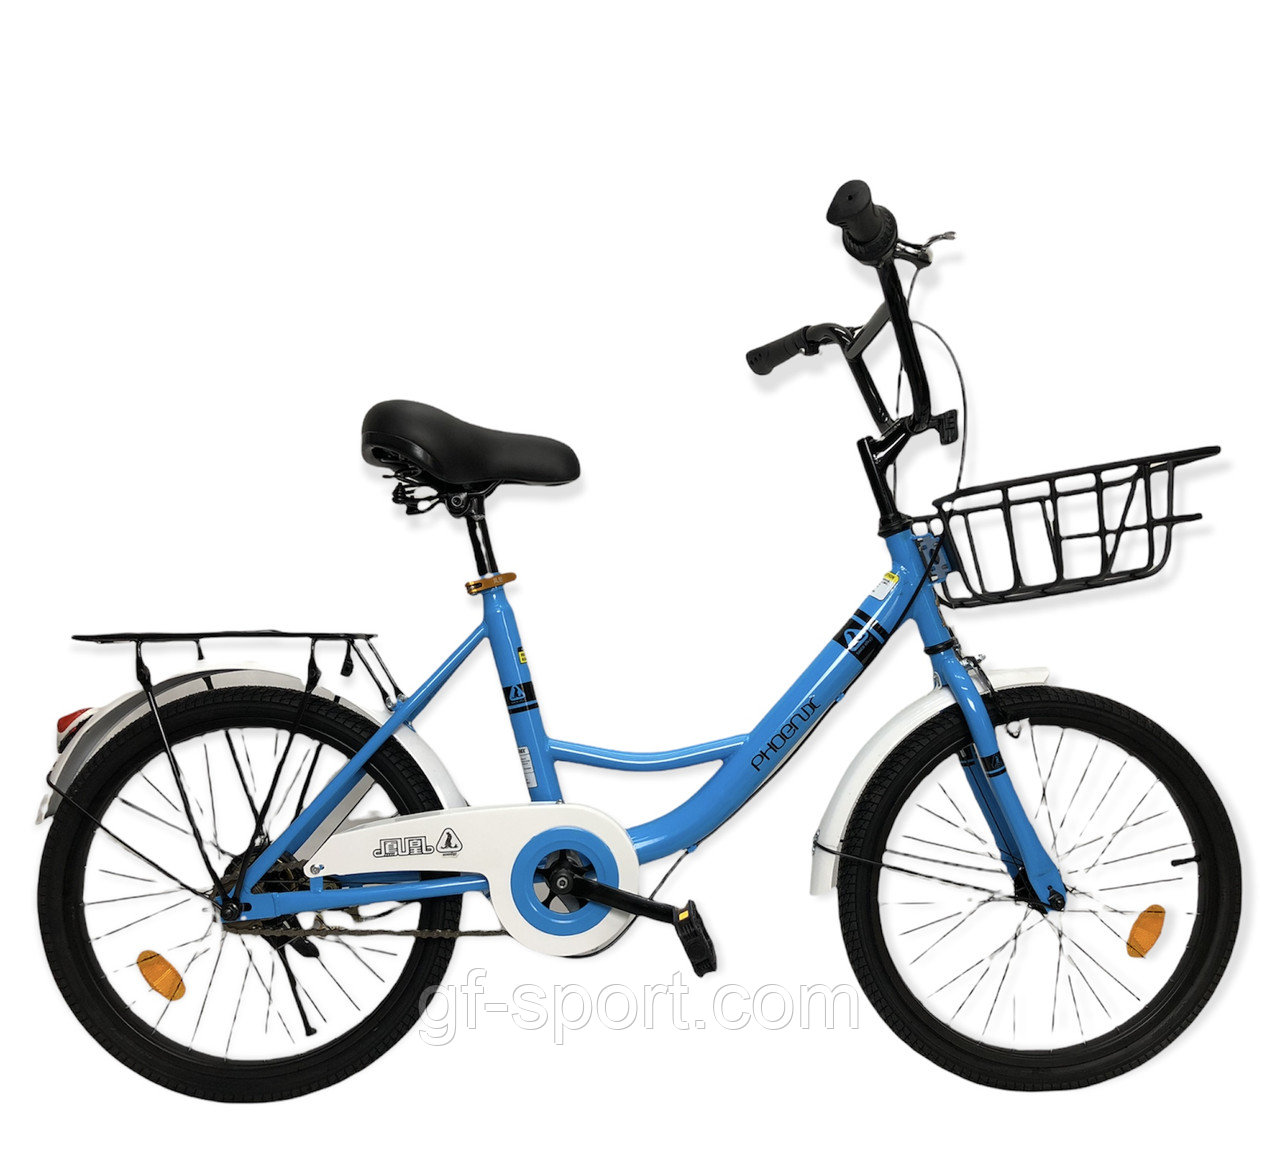 Велосипед Phoenix синий оригинал детский с холостым ходом 20 размер (511-20)